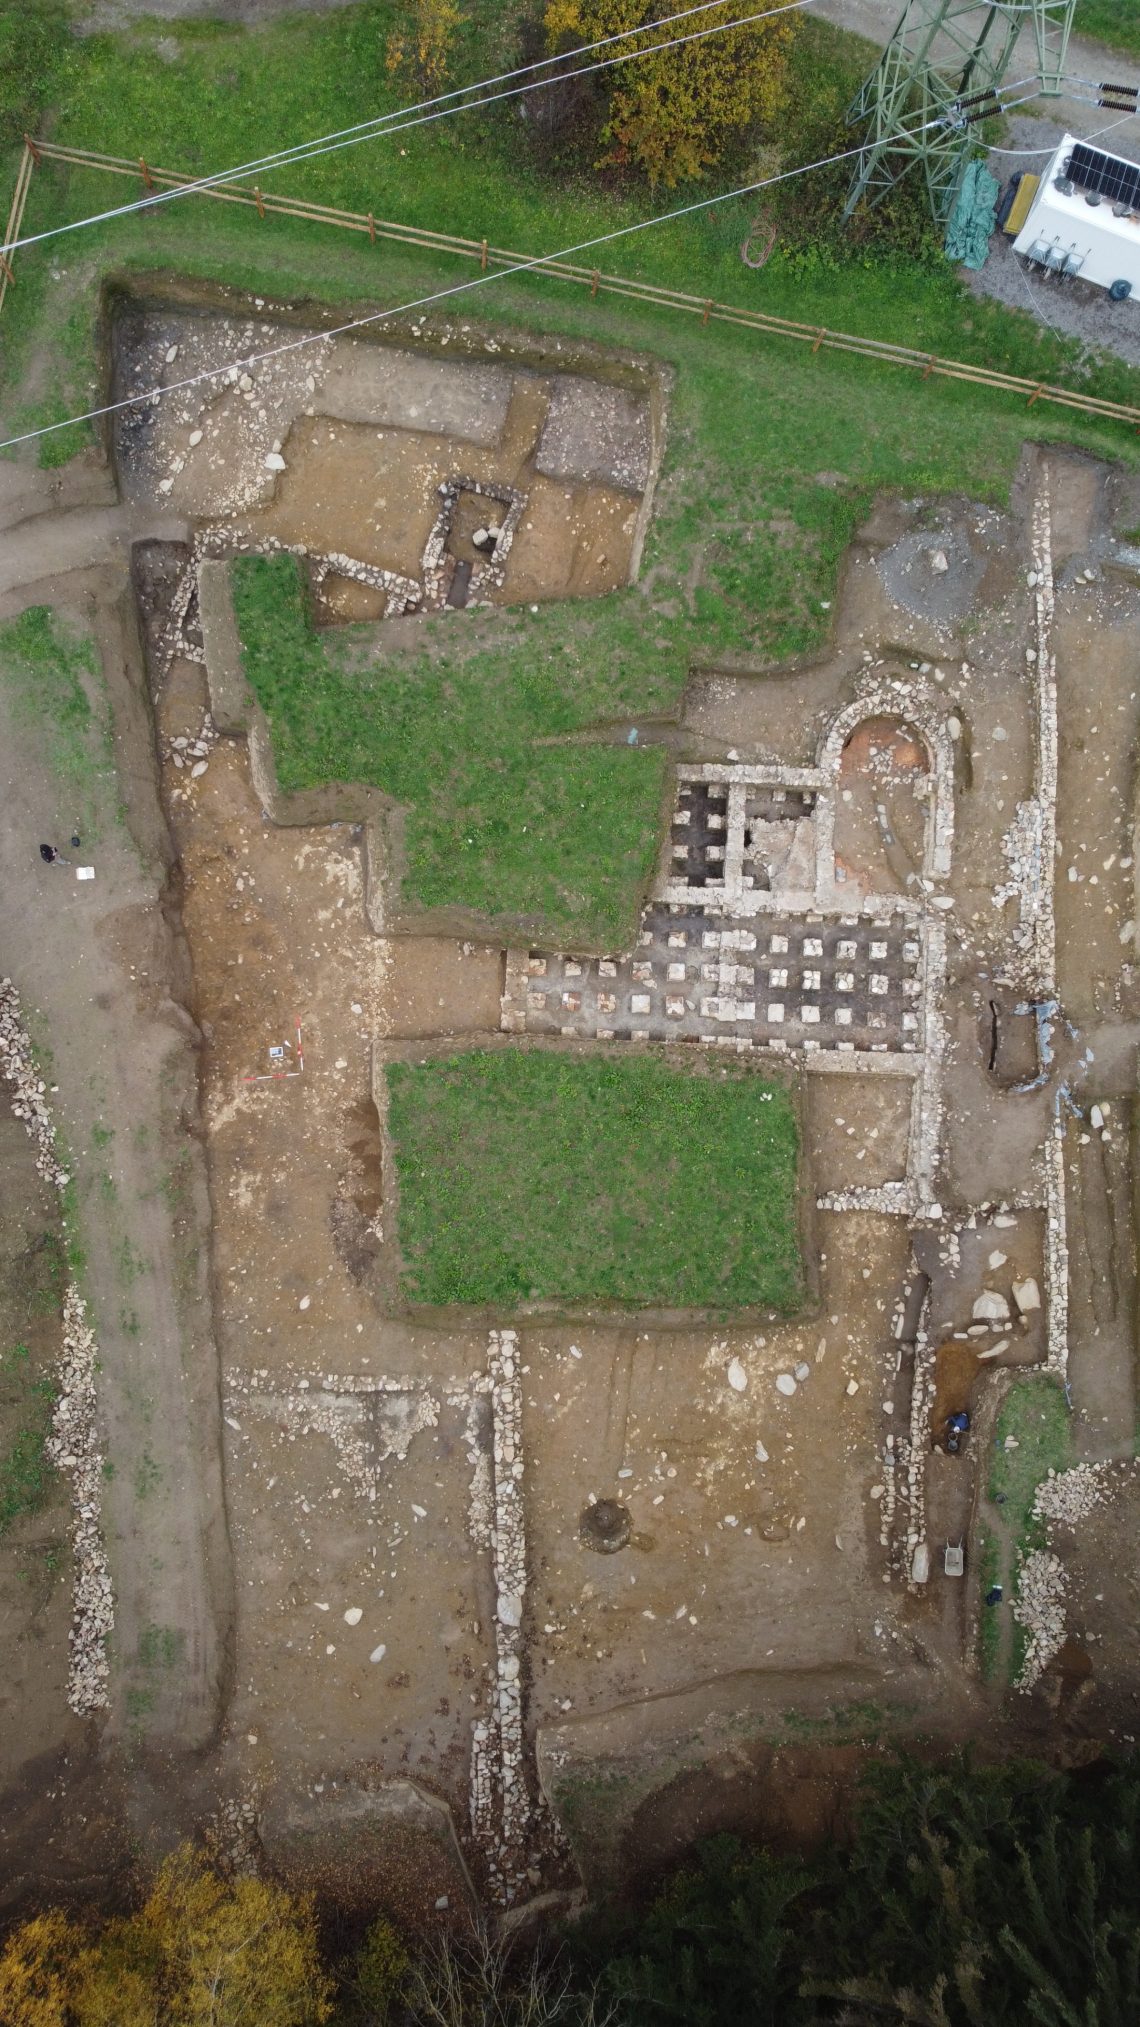 Überblick der ausgegrabenen Strukturen im Bereich des Römerbades.